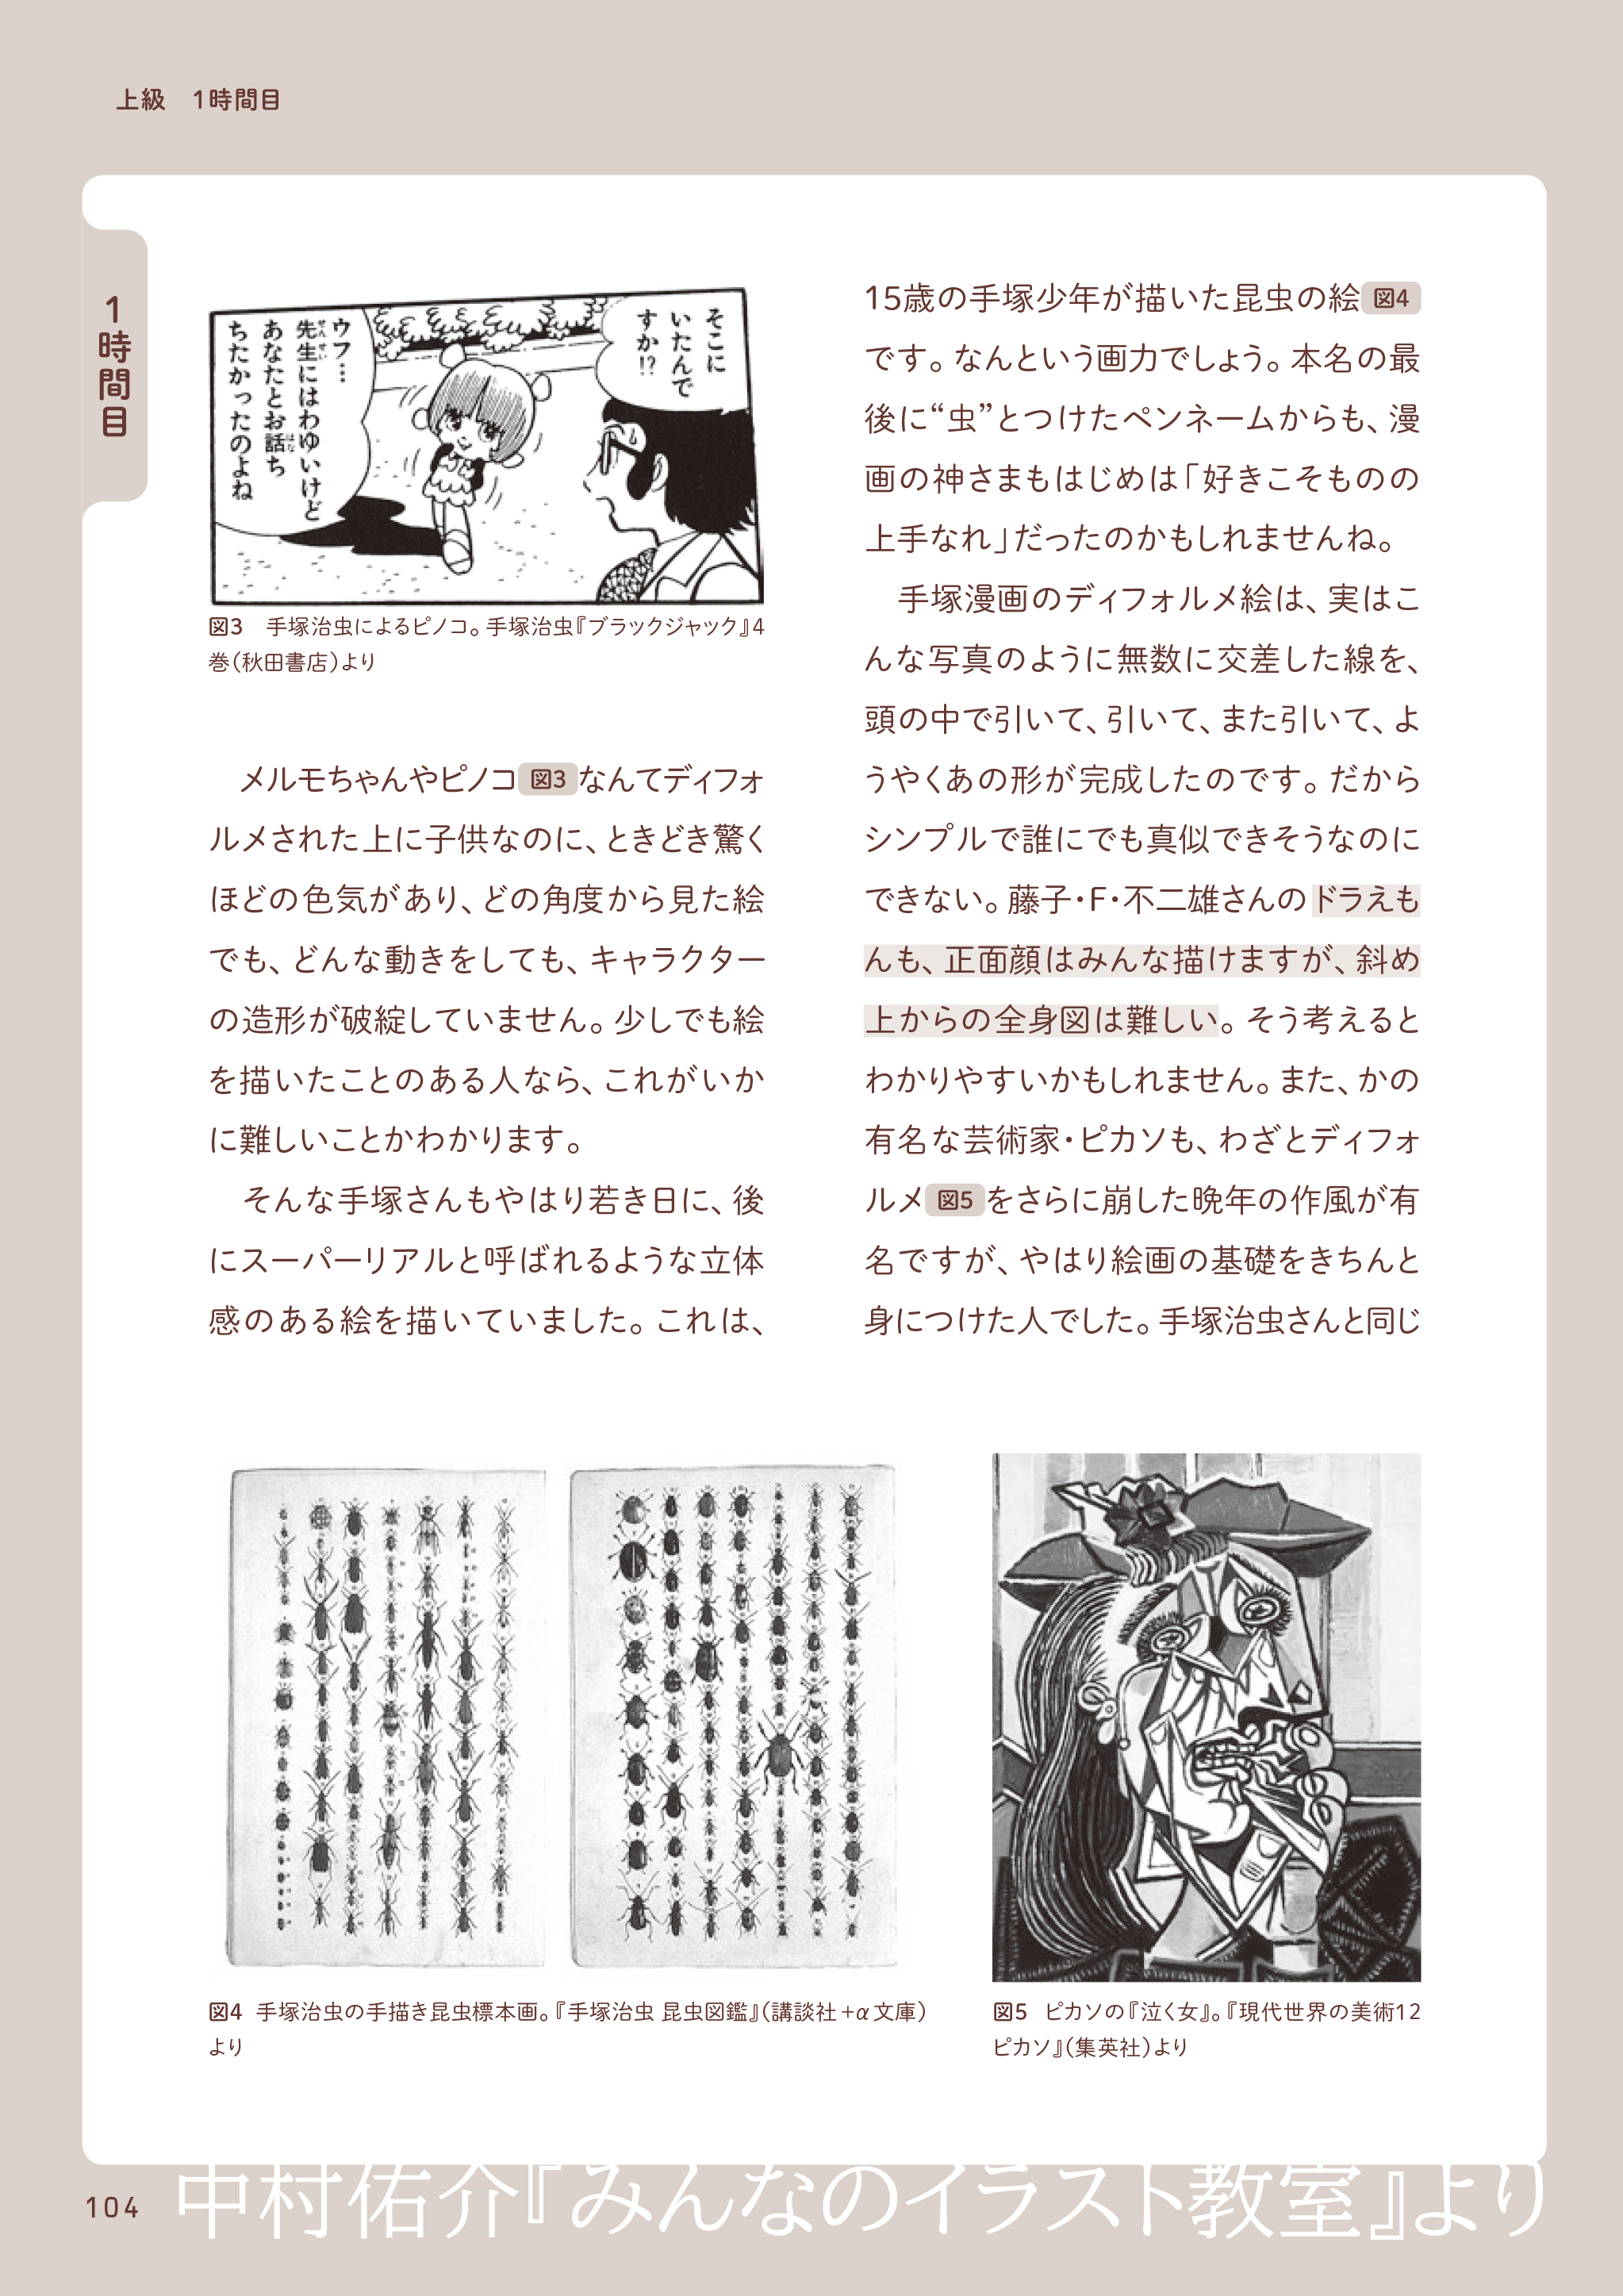 中村佑介 Yusuke Nakamura みんなのイラスト教室 ４ページだけ置いときます T Co Zgcwer3xv1 T Co 0vgyzjoxts Twitter